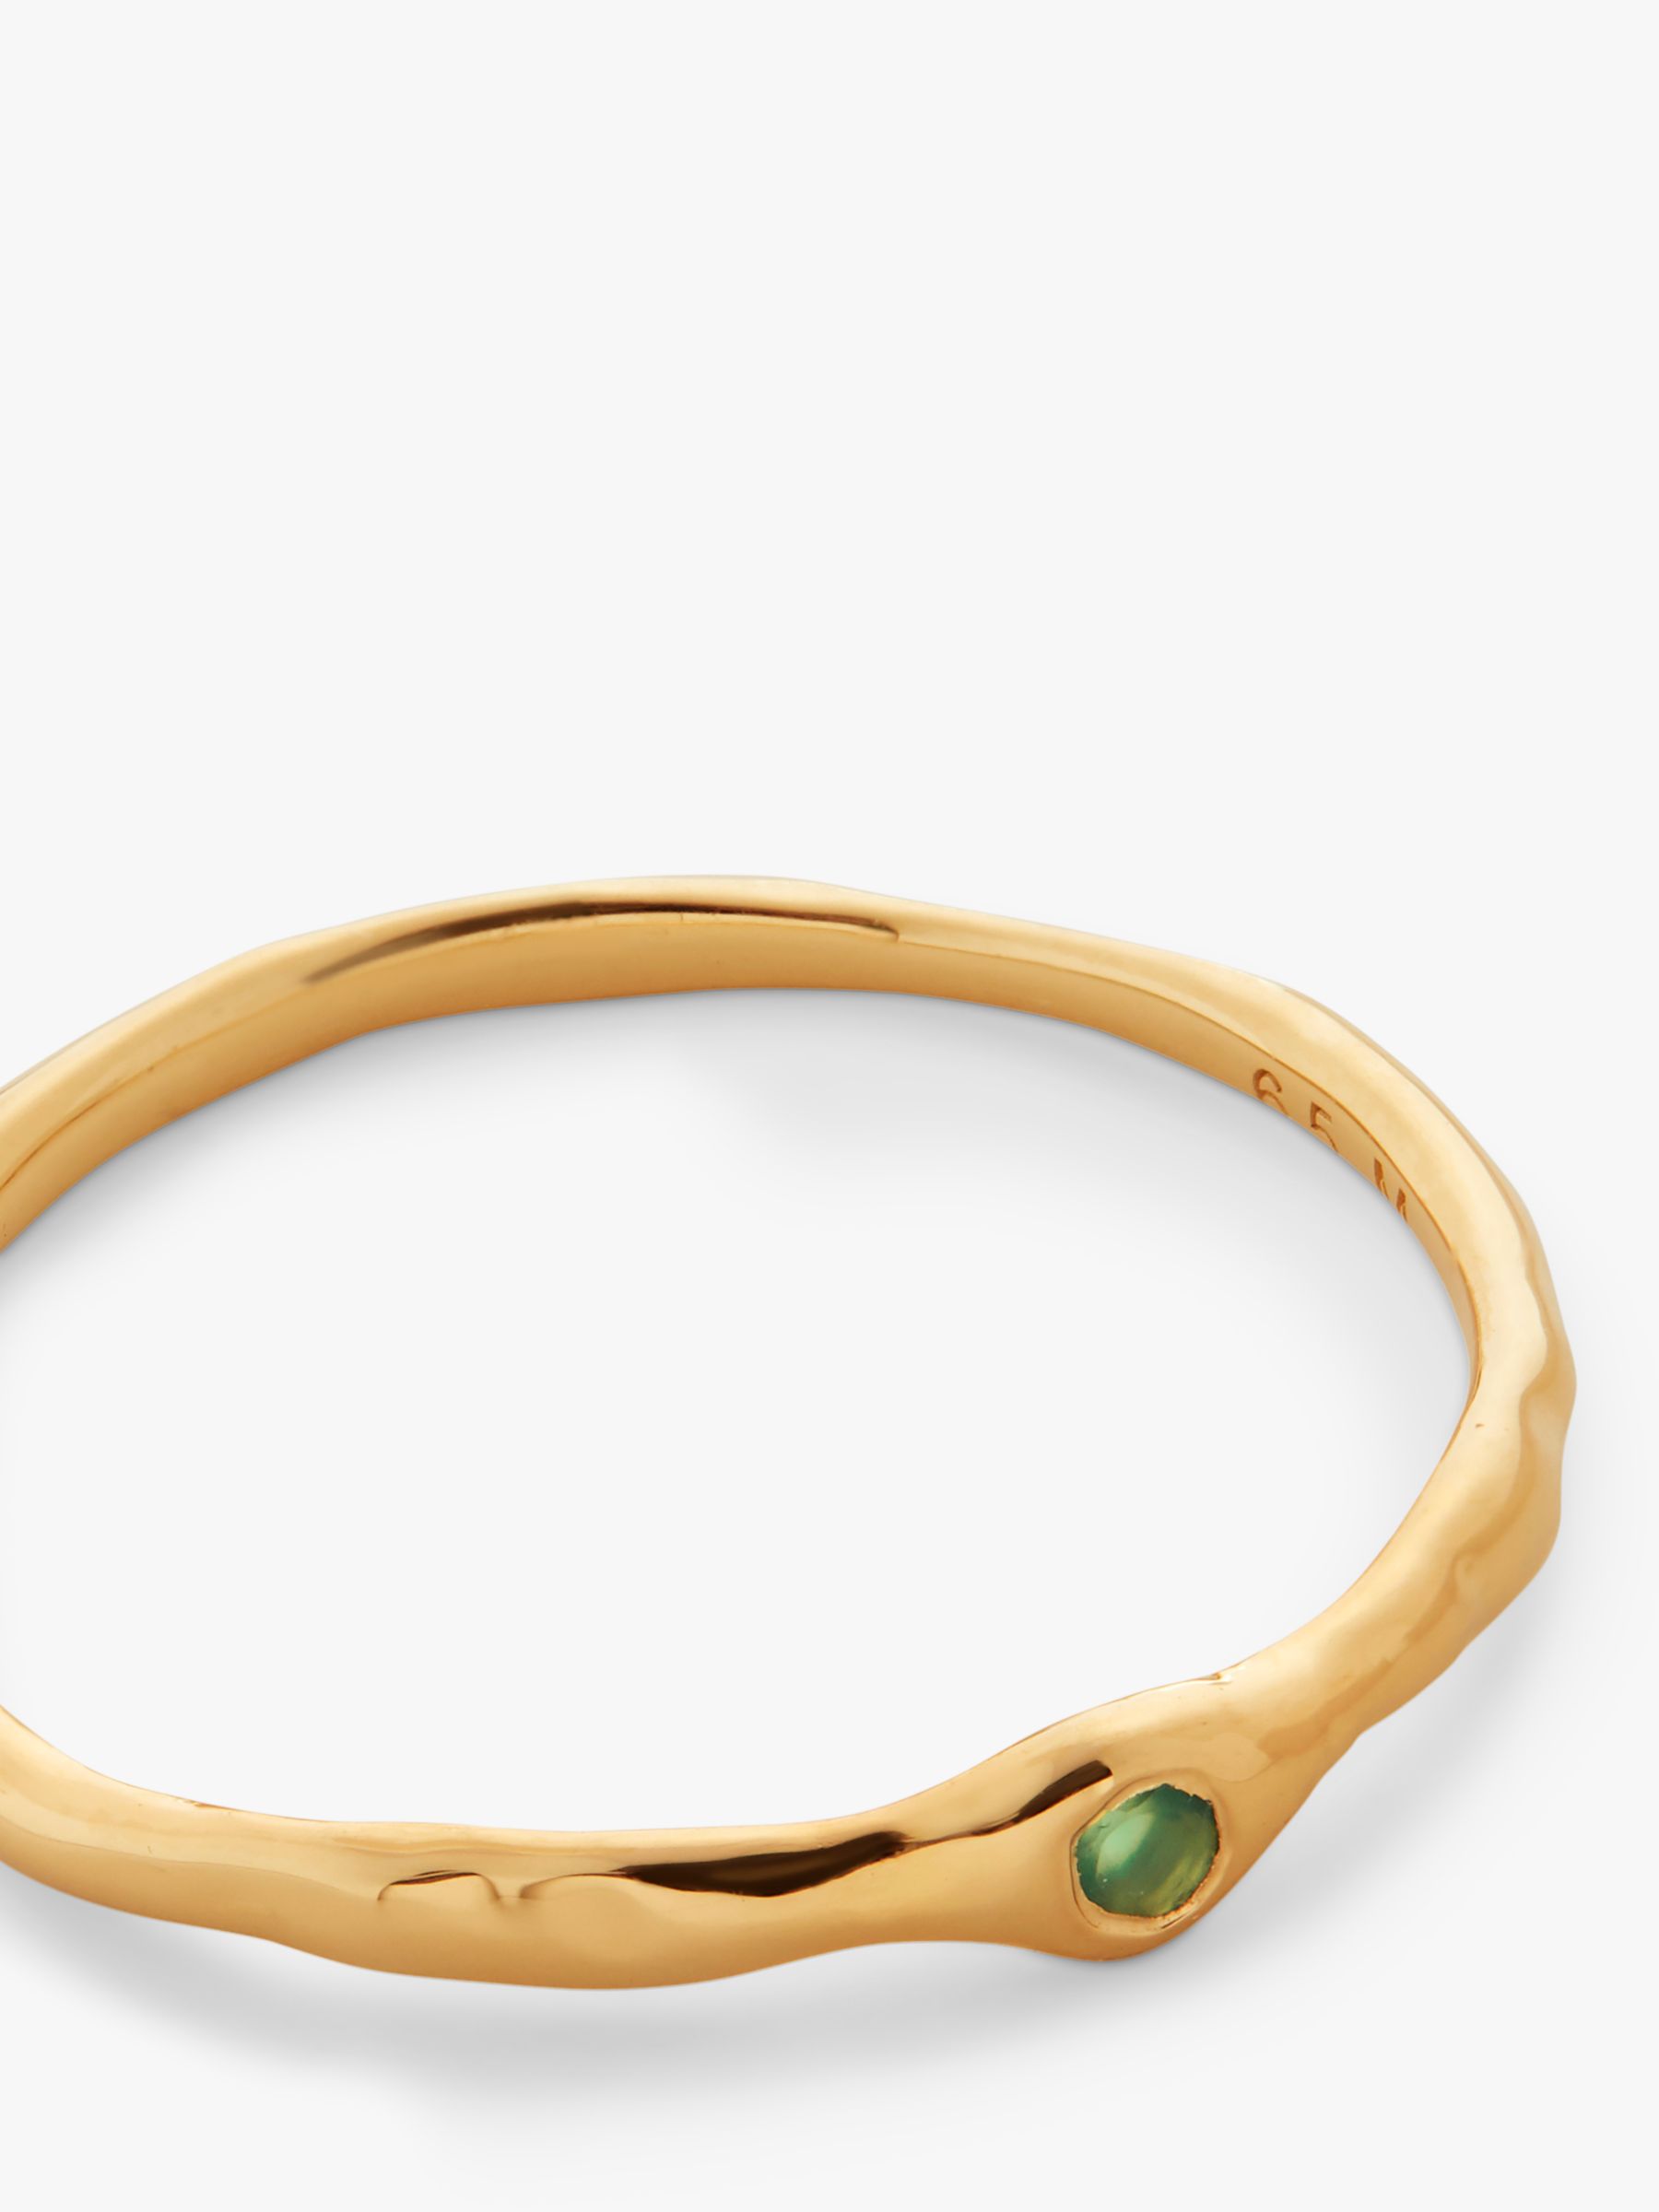 Buy Monica Vinader Siren Mini Green Onyx Ring, Gold Online at johnlewis.com